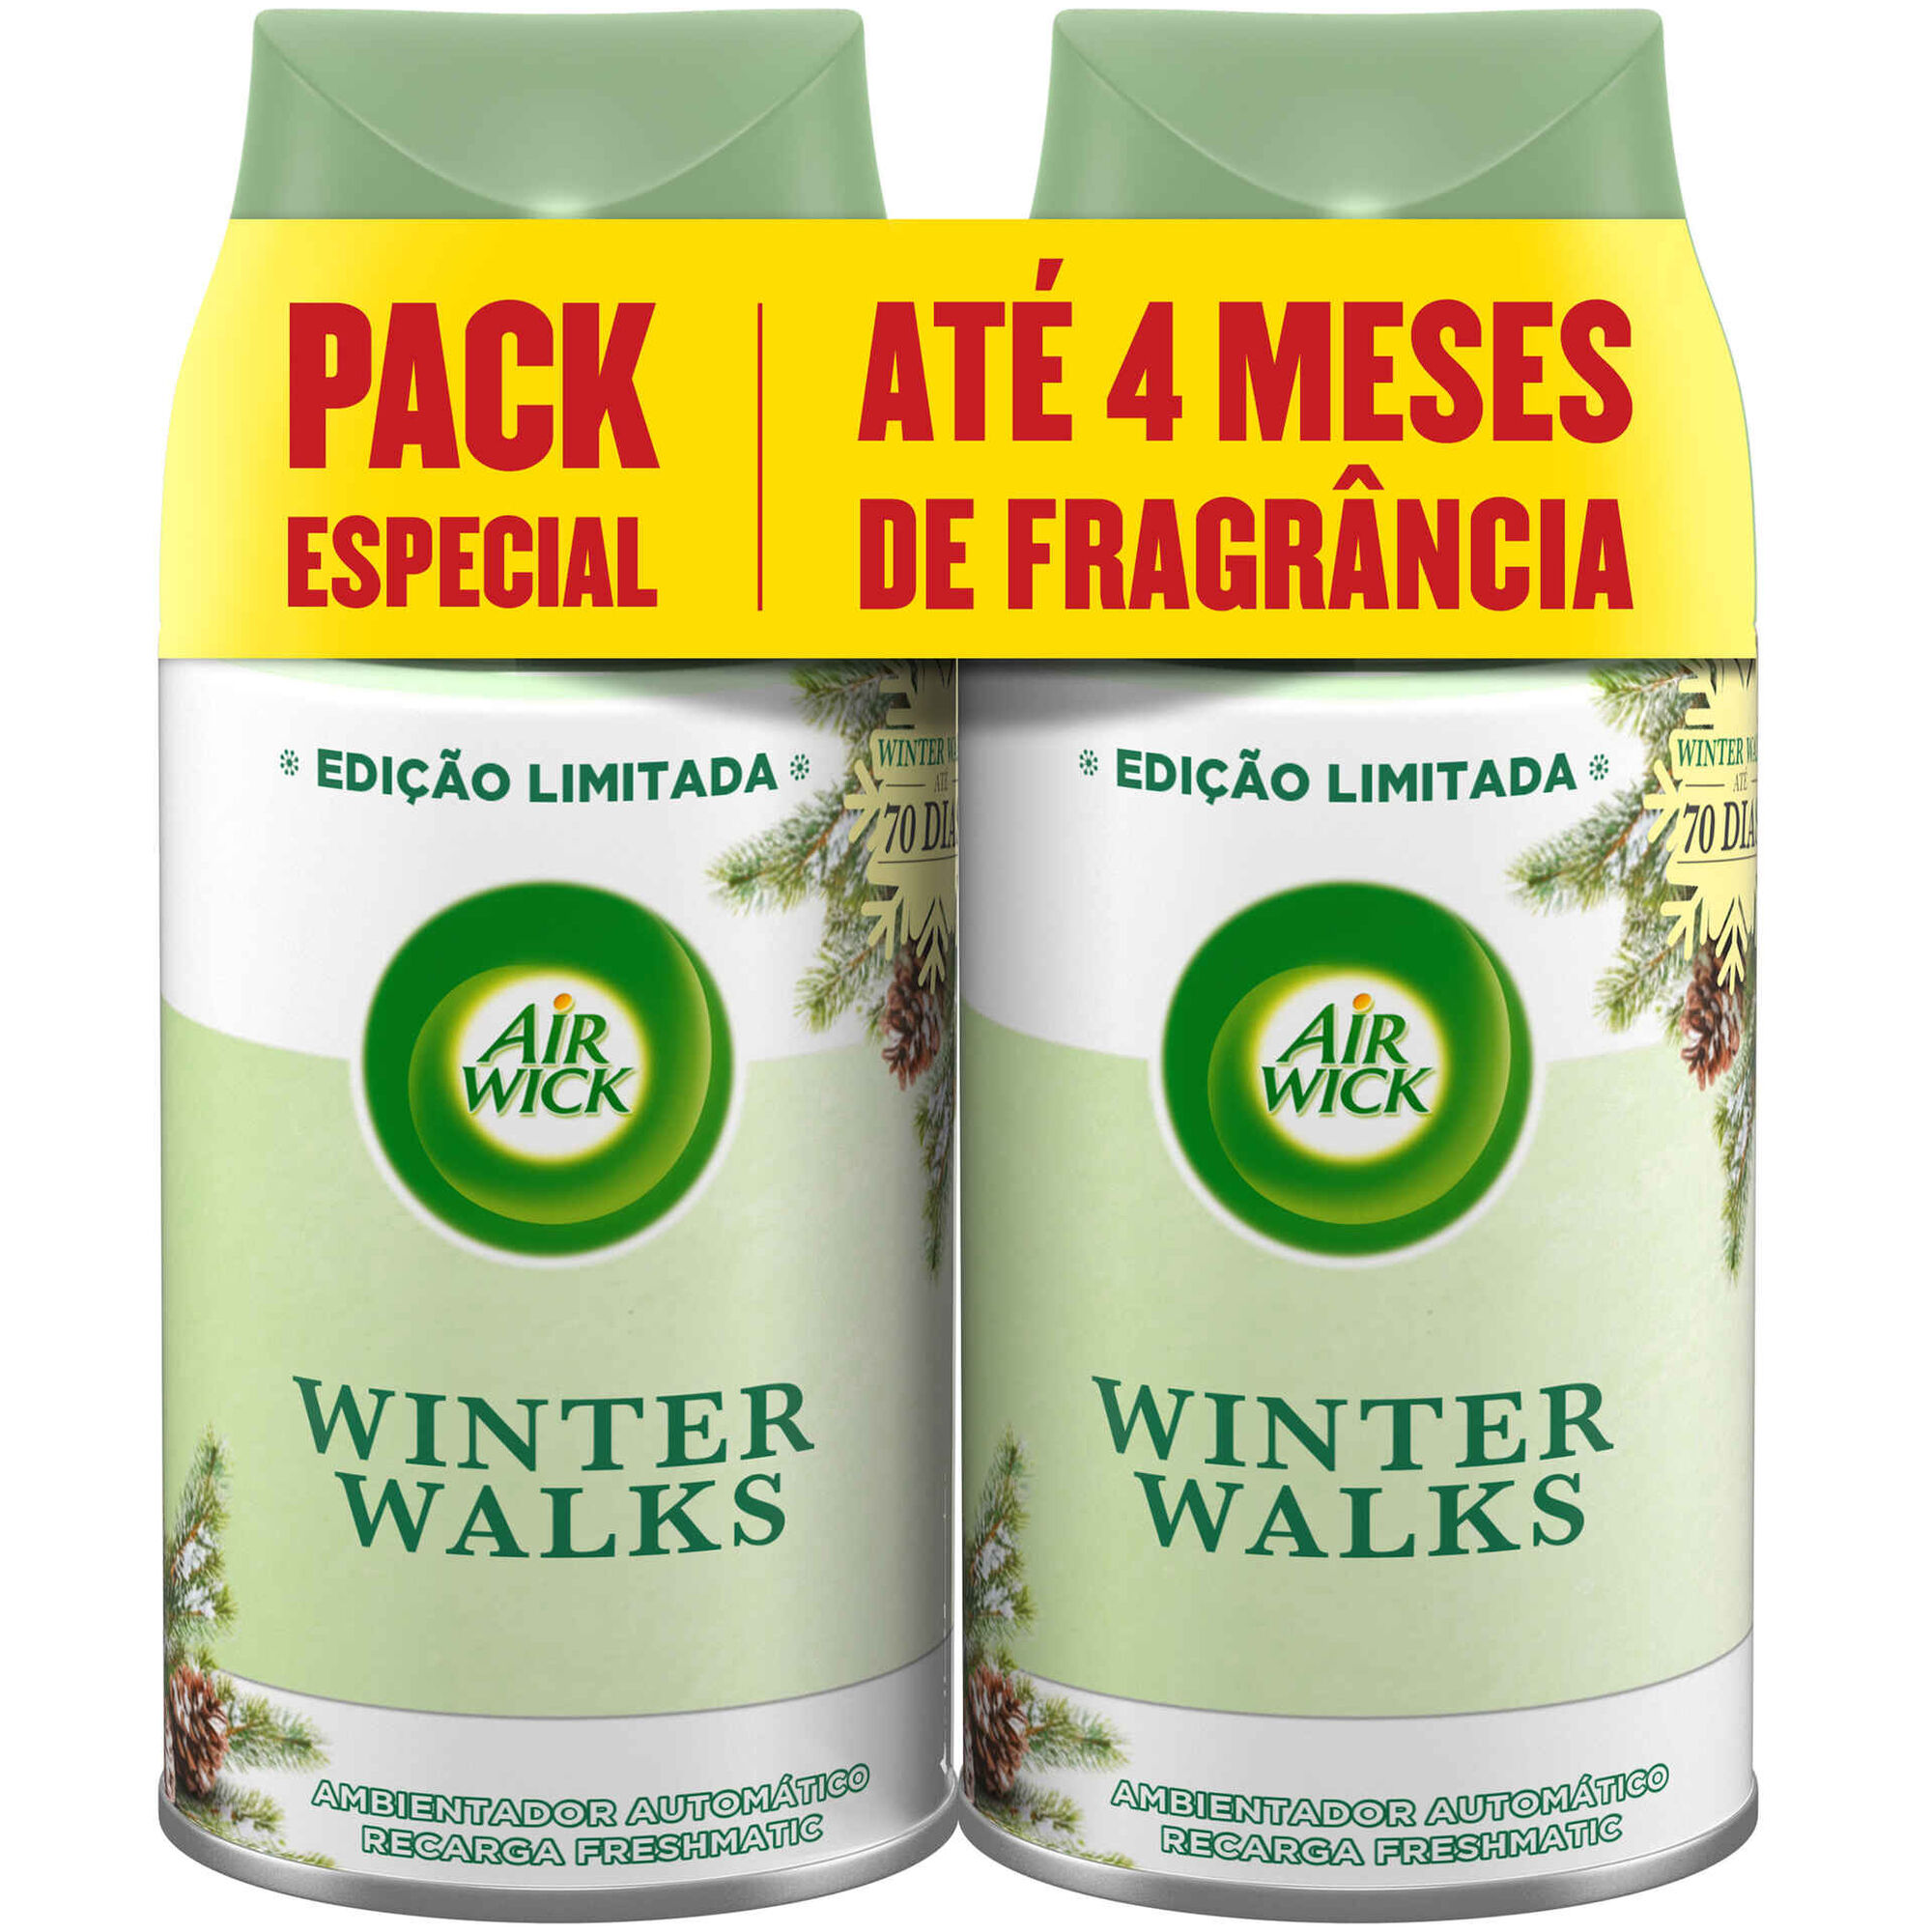 Ambientador Recarga Freshmatic Duo Winter Walks